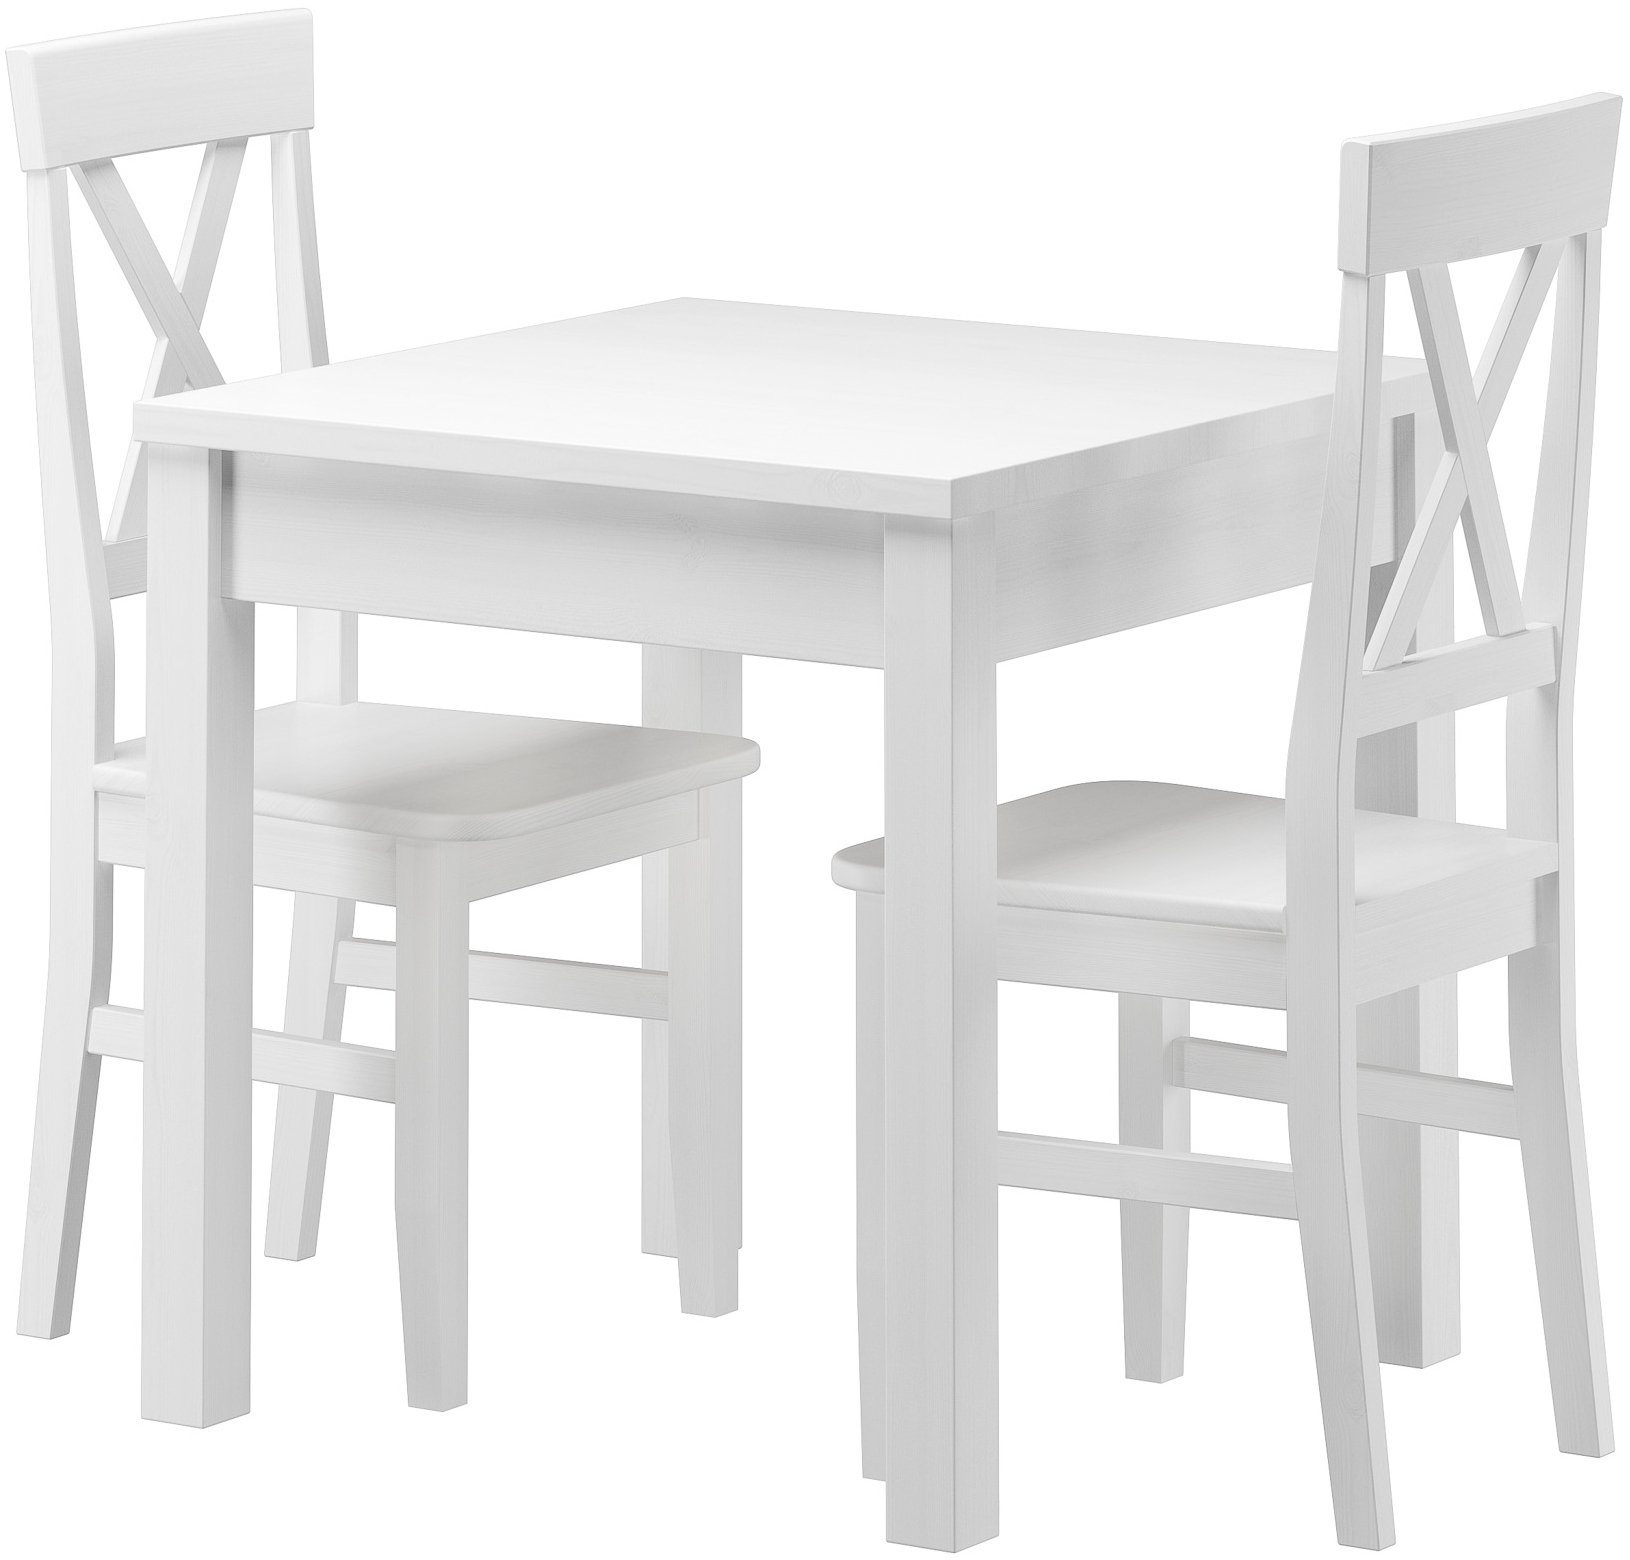 2 waschweiß Stilvolle Tisch Massivholz Essgruppe kleine Stühle Essgruppe ERST-HOLZ Kiefer